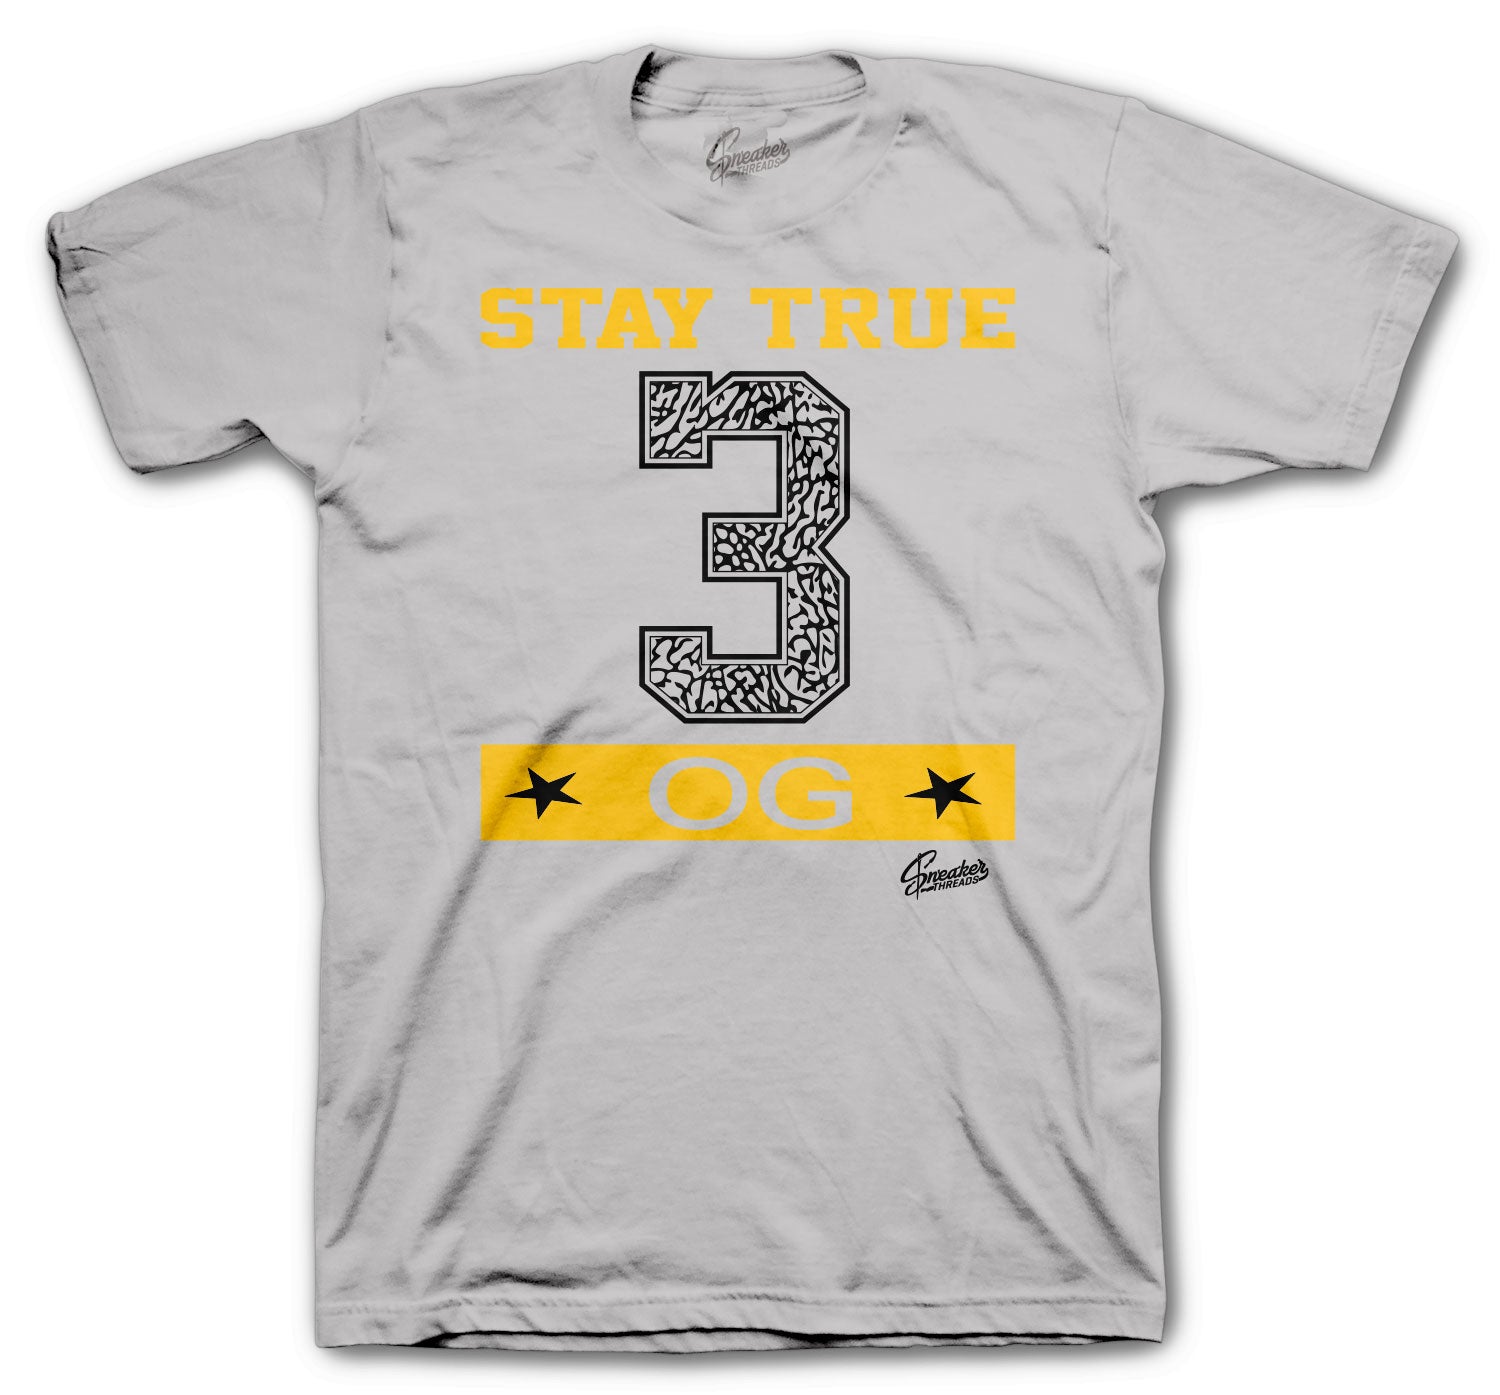 Retro 3 Cool Grey Shirt - Stay True - Grey